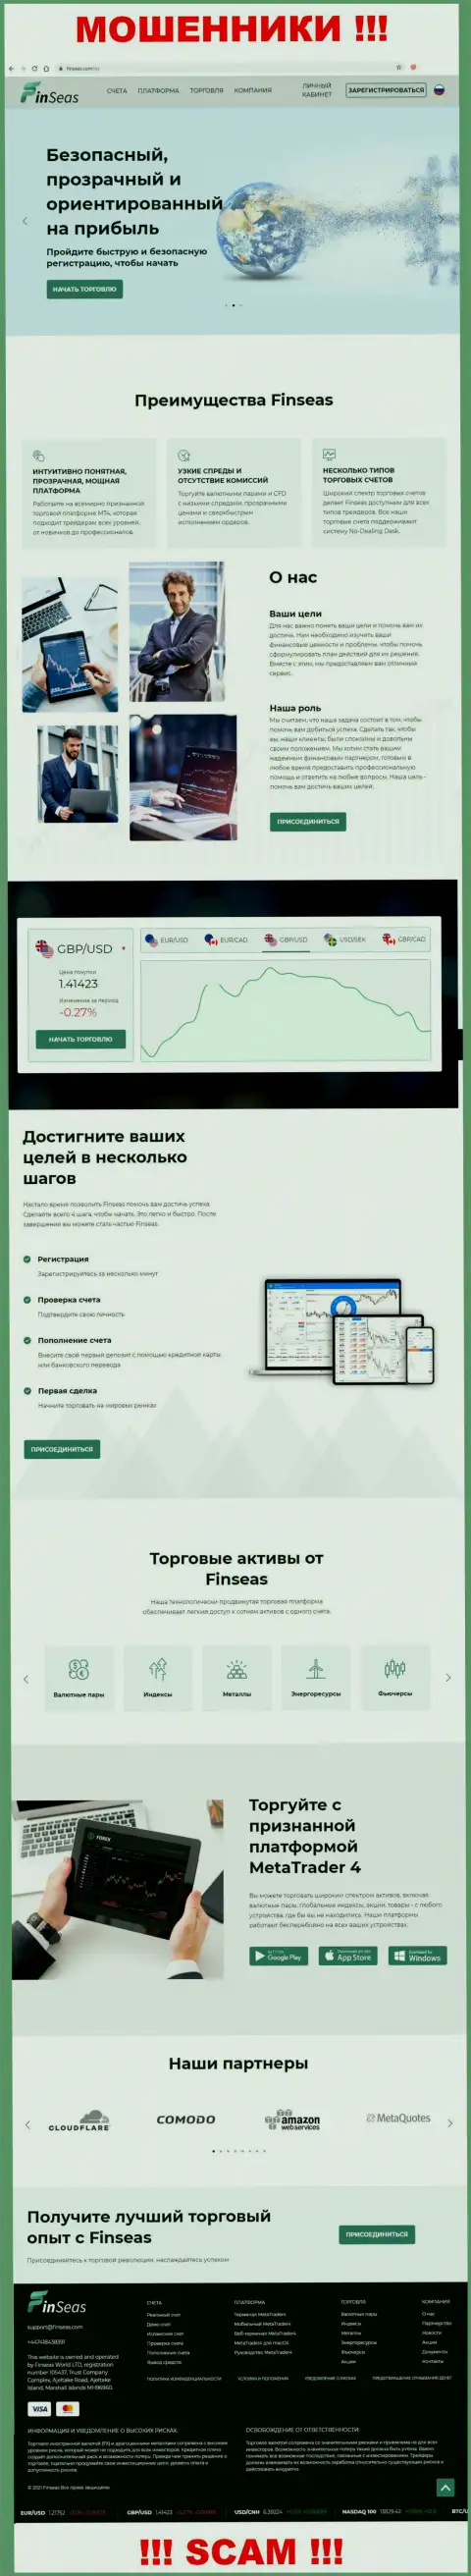 Сайт конторы FinSeas, заполненный фейковой инфой